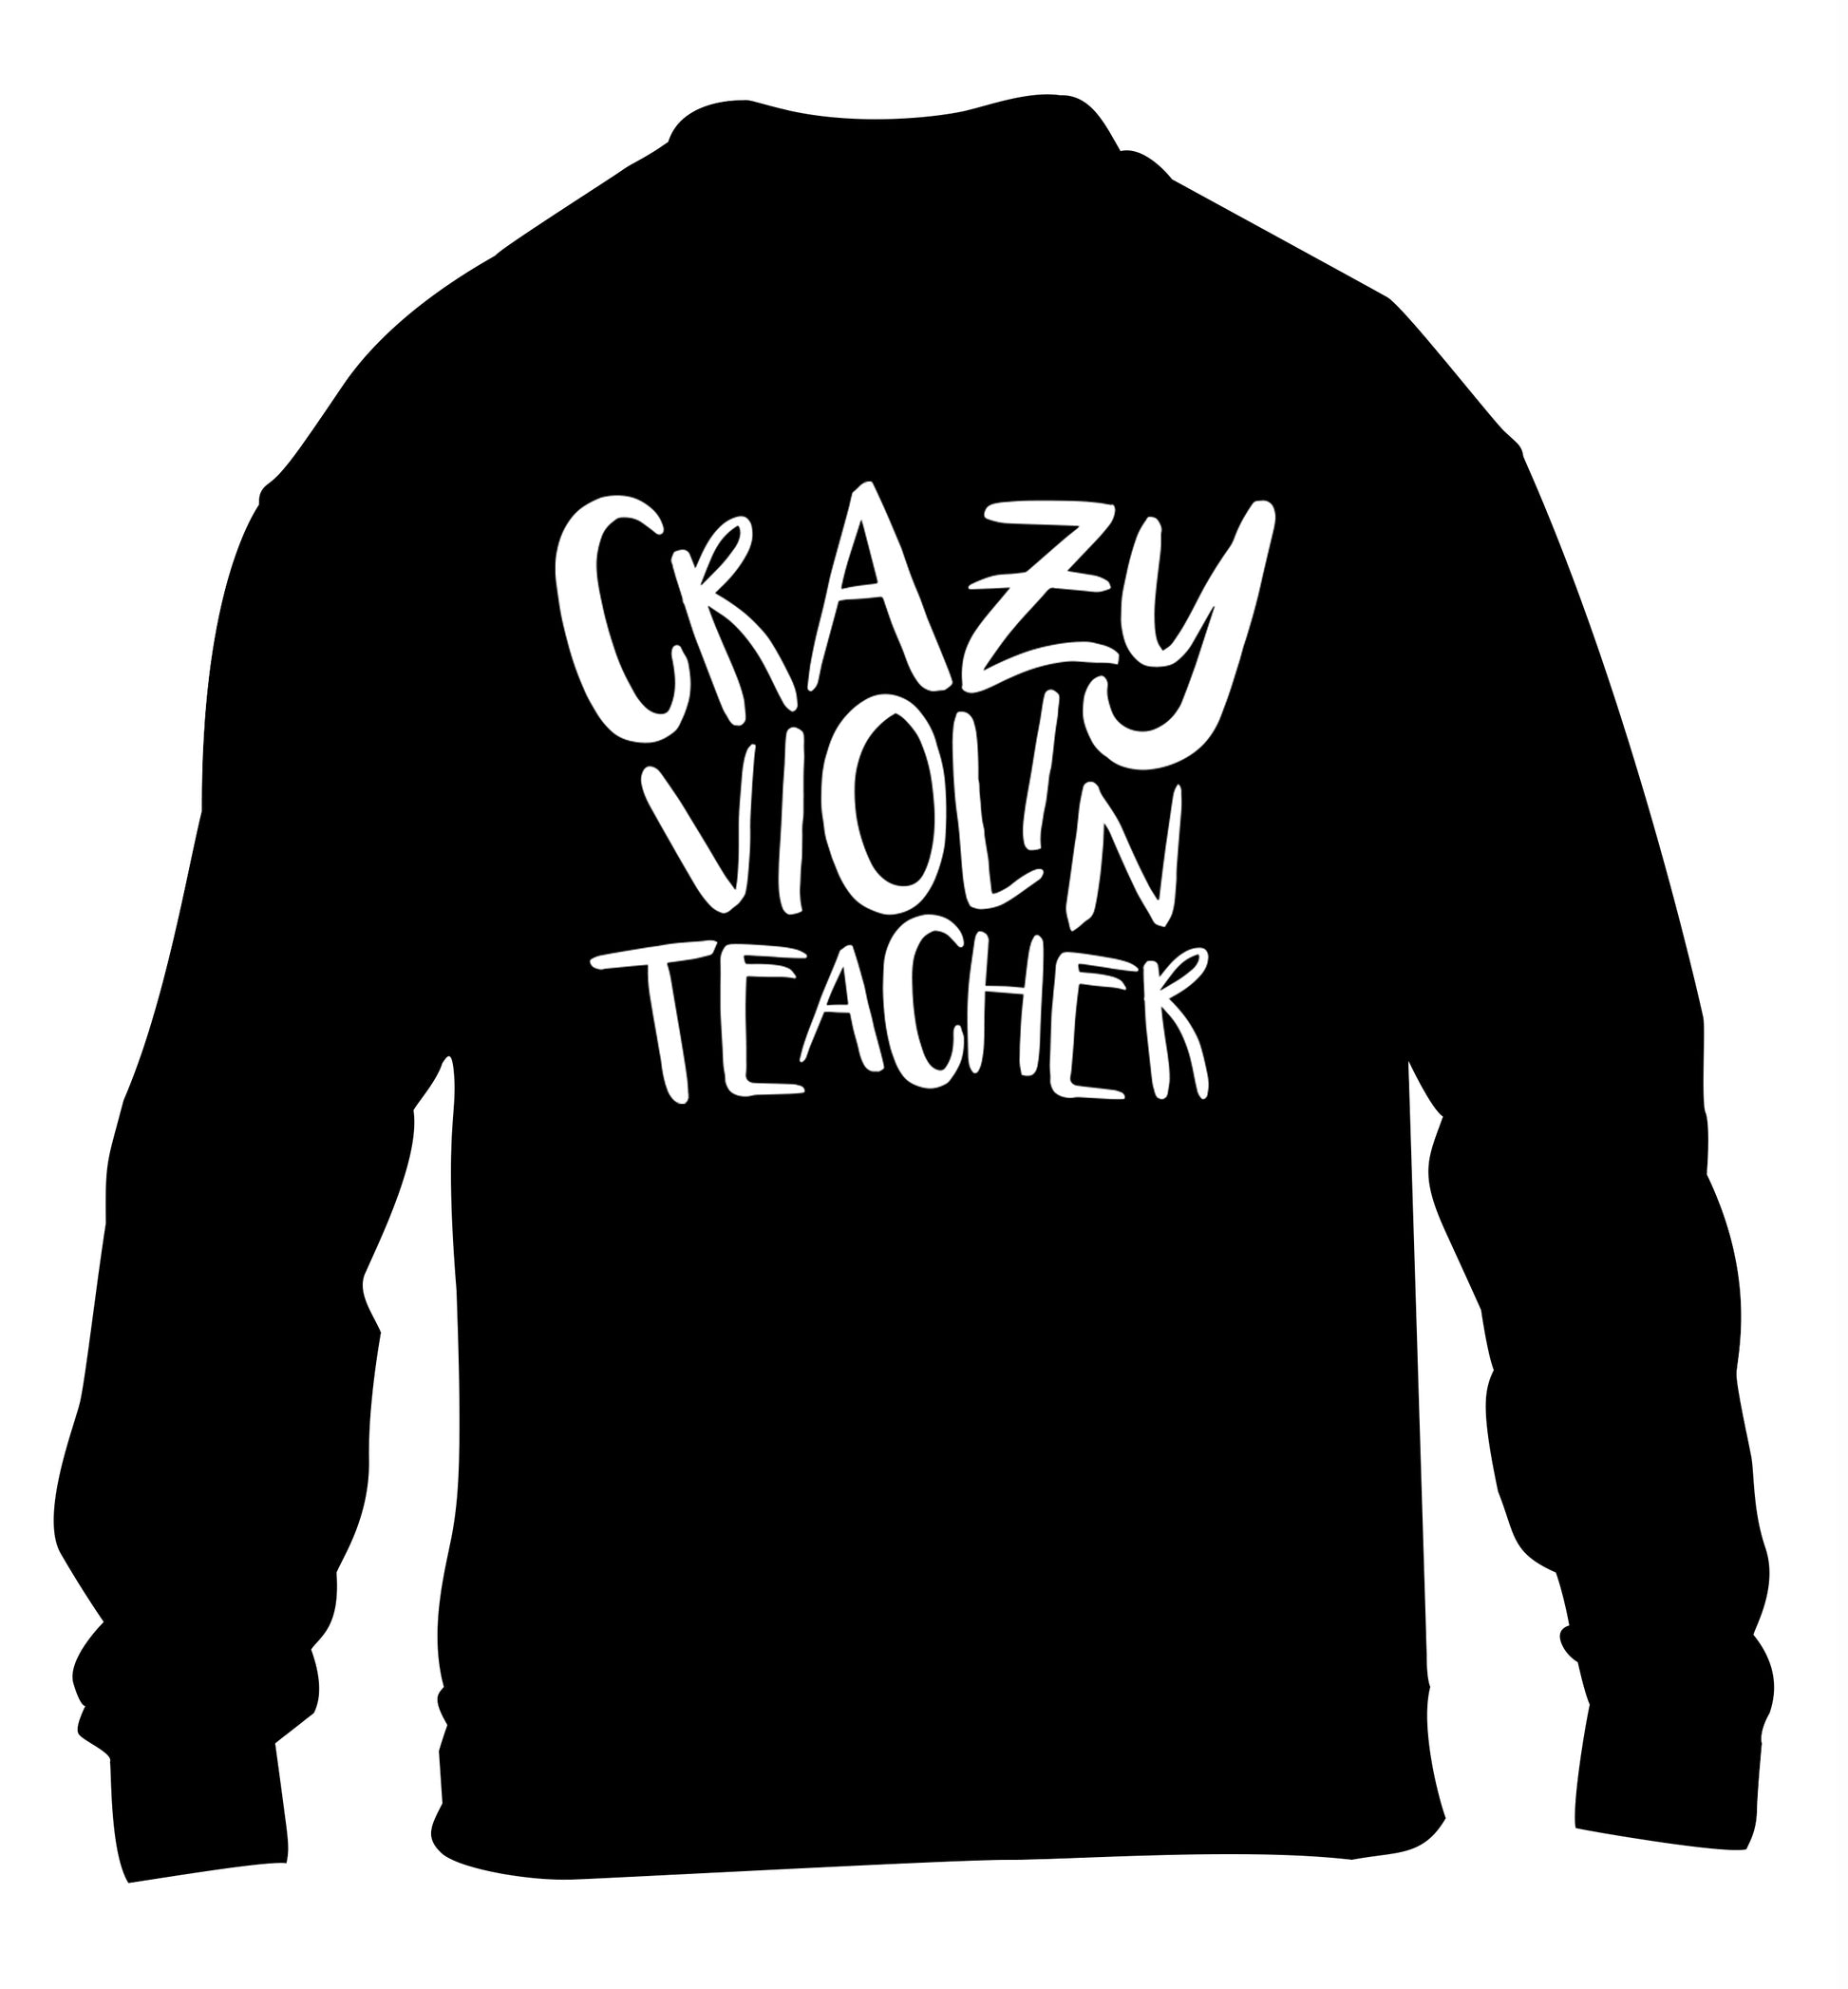 Crazy violin teacher children's black sweater 12-13 Years